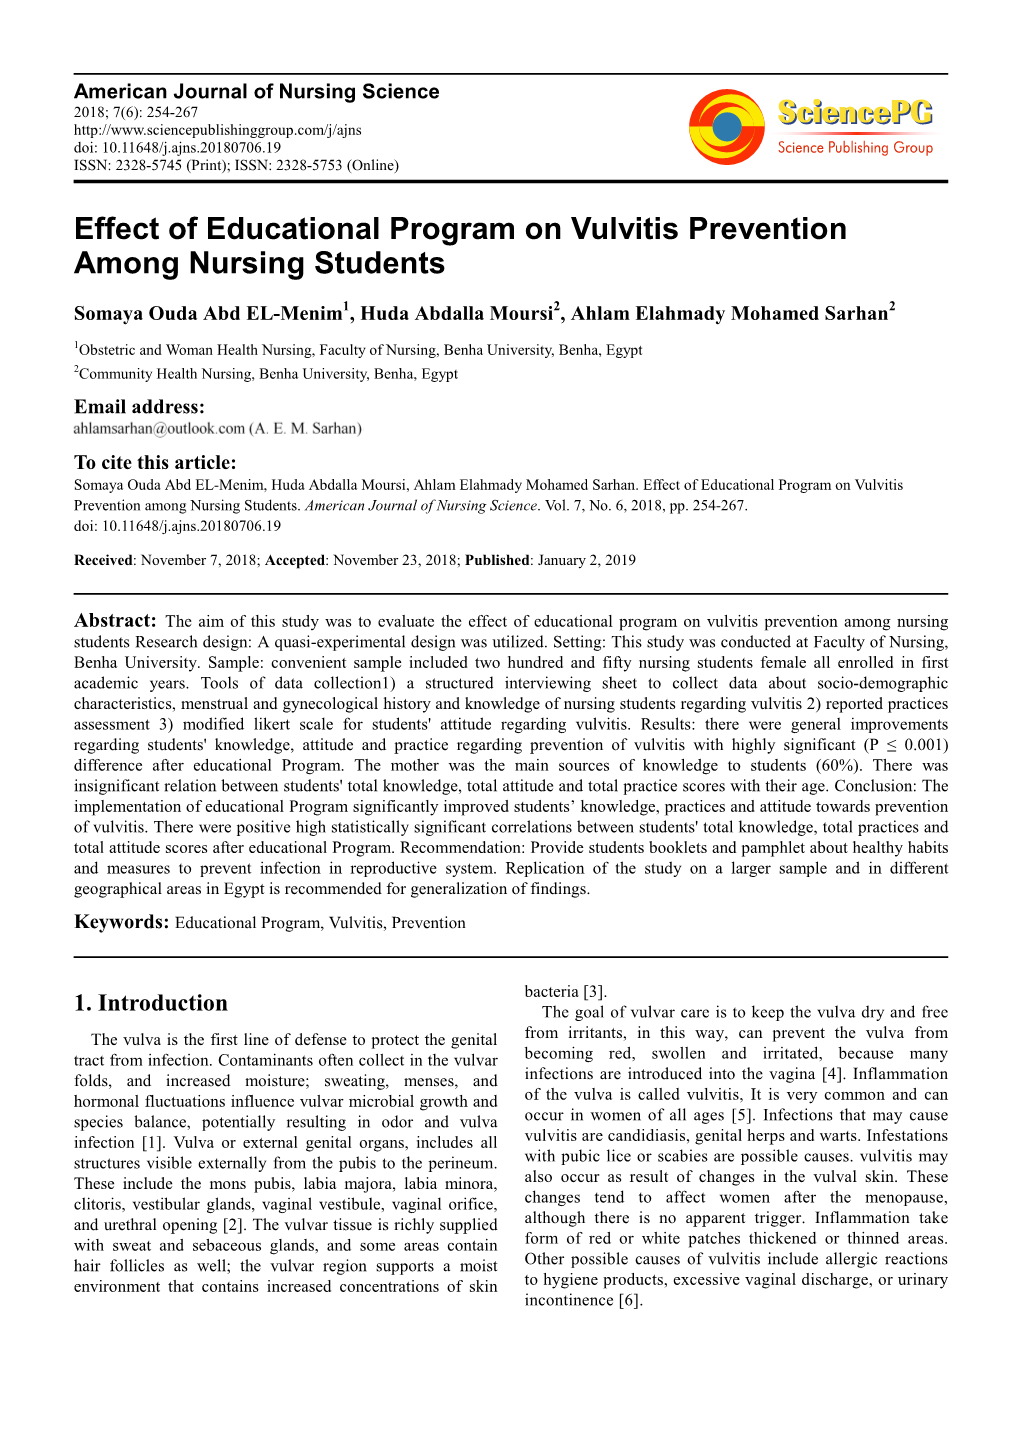 Effect of Educational Program on Vulvitis Prevention Among Nursing Students